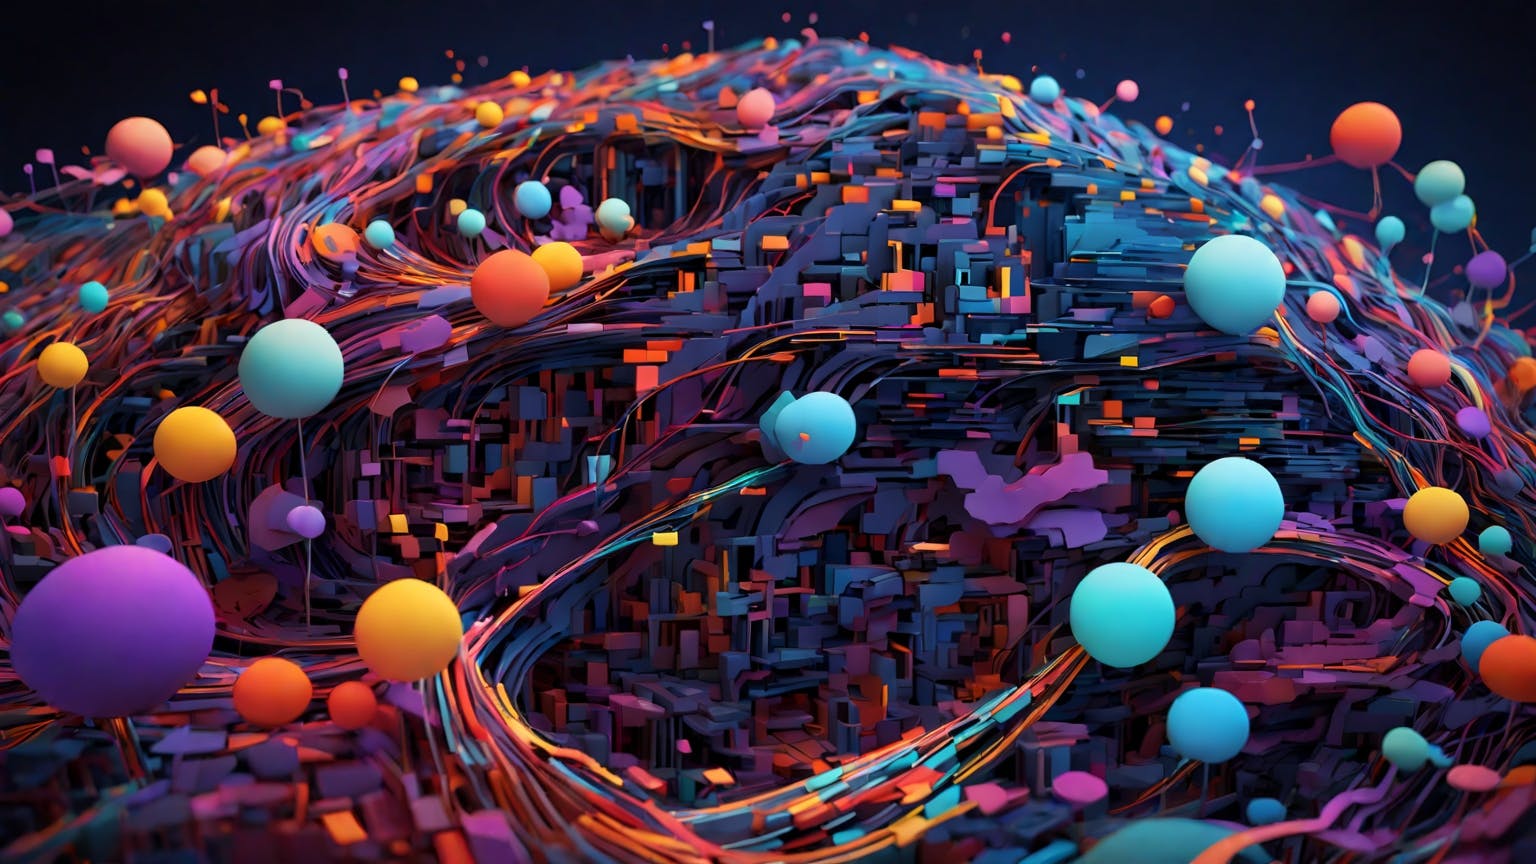 Abstract art representing computer programming